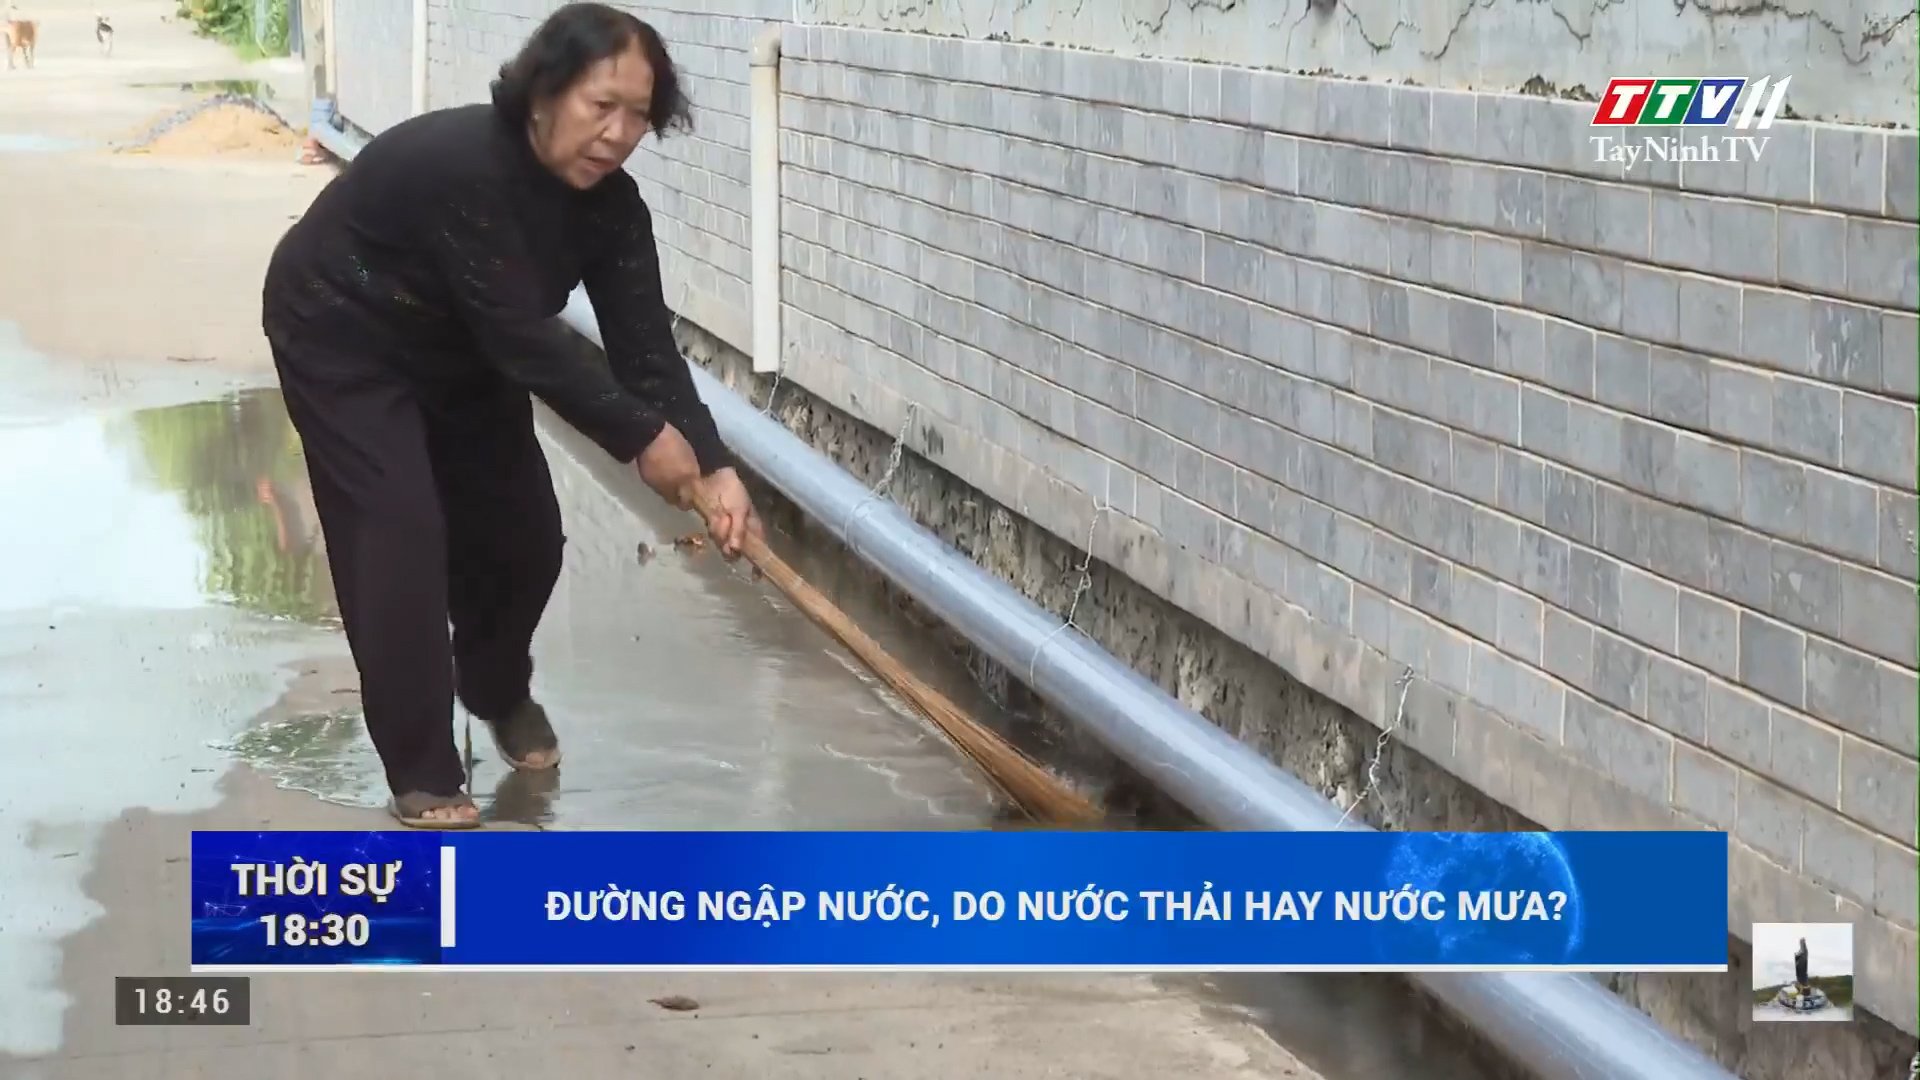 Đường ngập nước, do nước thải hay nước mưa | TayNinhTV